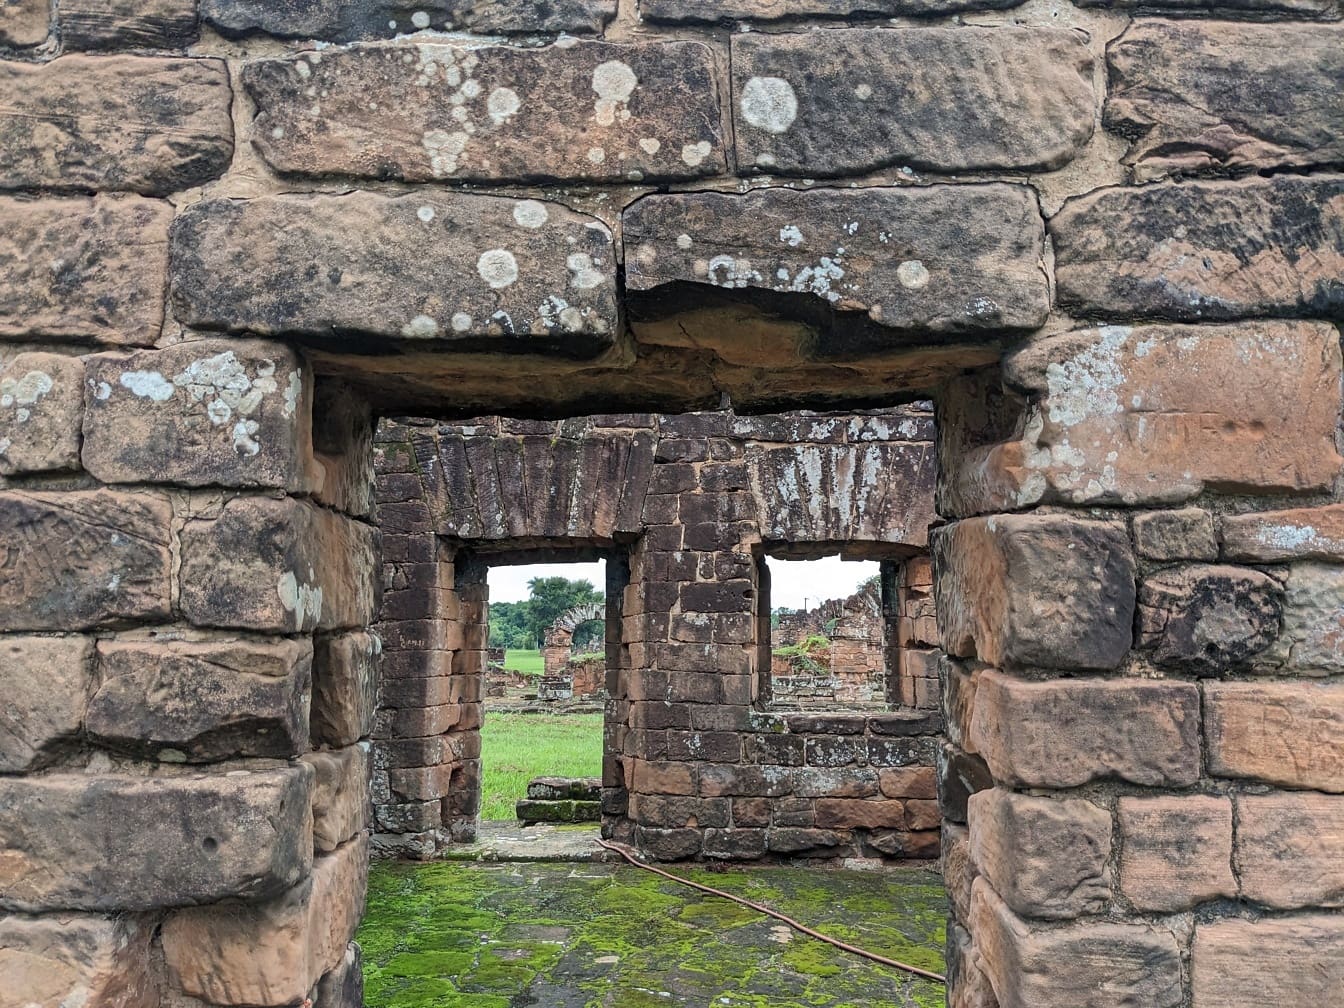 Một tàn tích thời trung cổ với một ô cửa tại bức tường gạch tại một địa điểm khảo cổ ở Paraguay